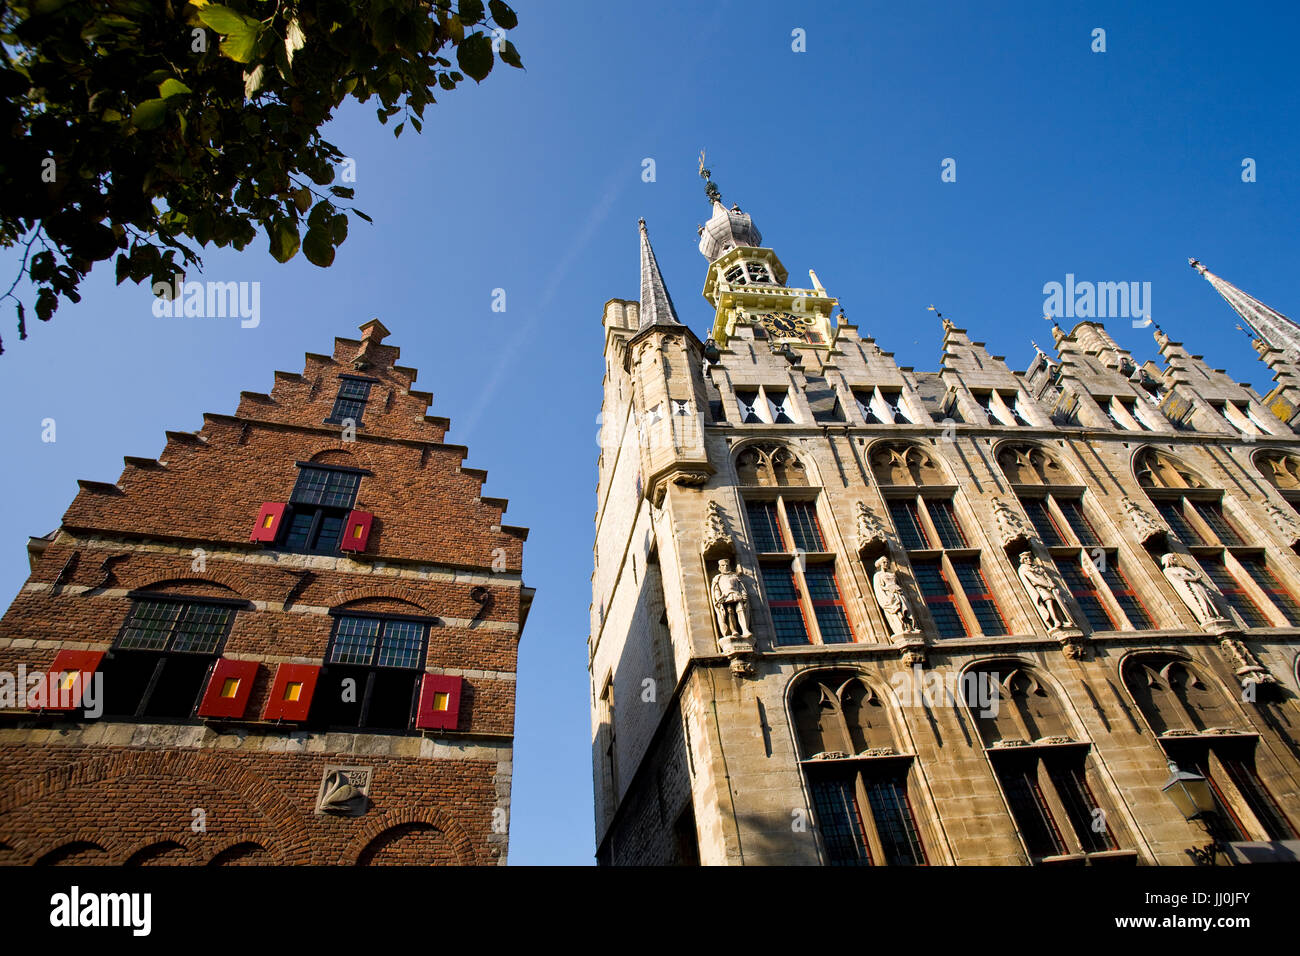 Europa, Niederlande, Zeeland, dem Dorf Veere auf der Halbinsel Walcheren, Giebel eines Hauses und das historische Rathaus am Marktplatz. Stockfoto